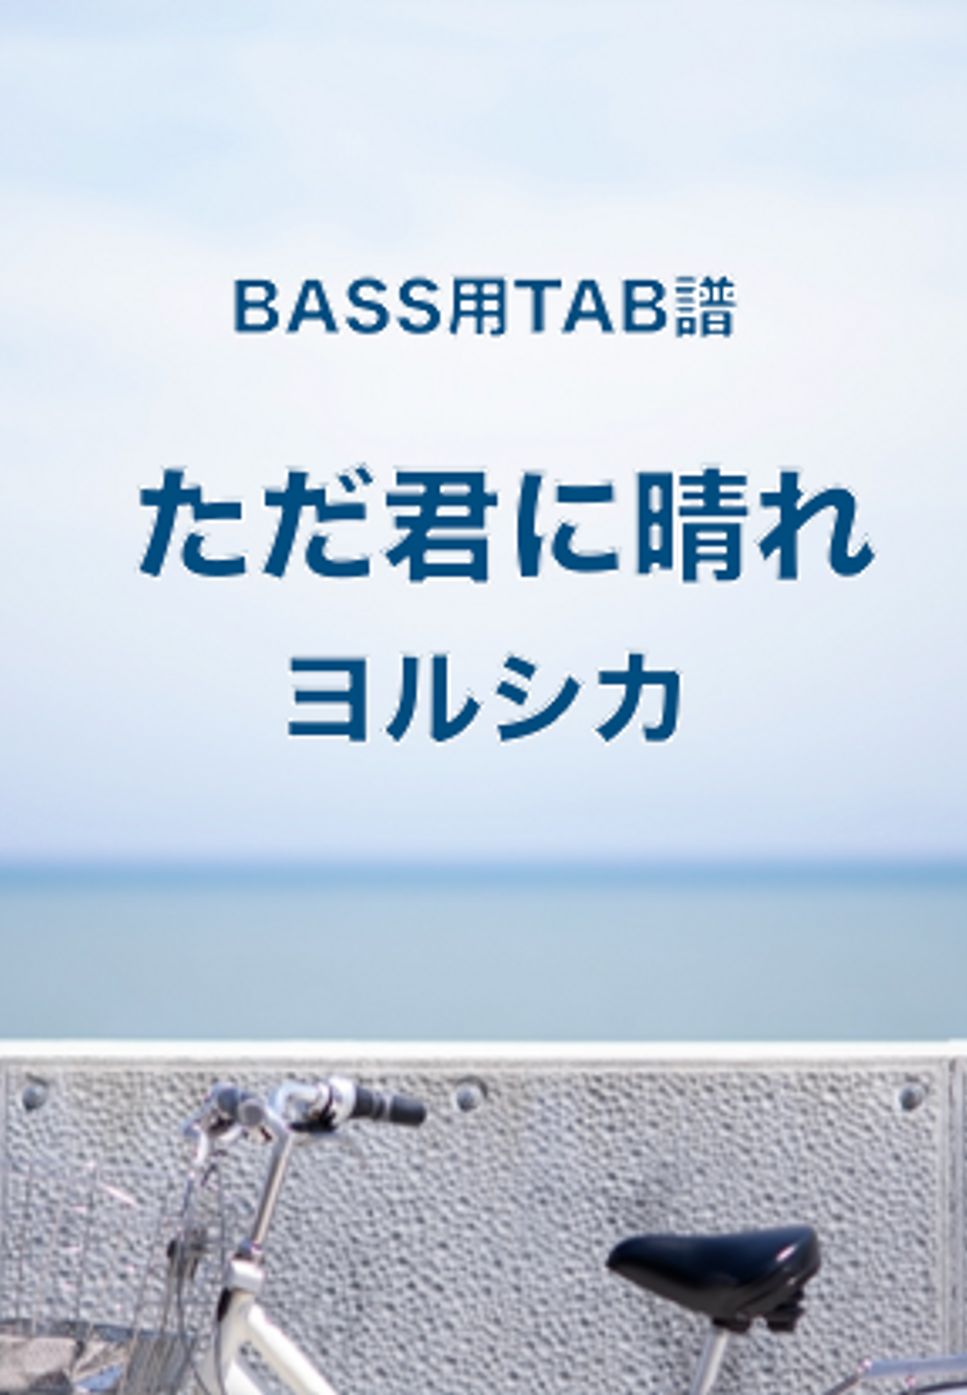 ヨルシカ - ただ君に晴れ (ベースTAB譜) by ベースライン研究所タペ